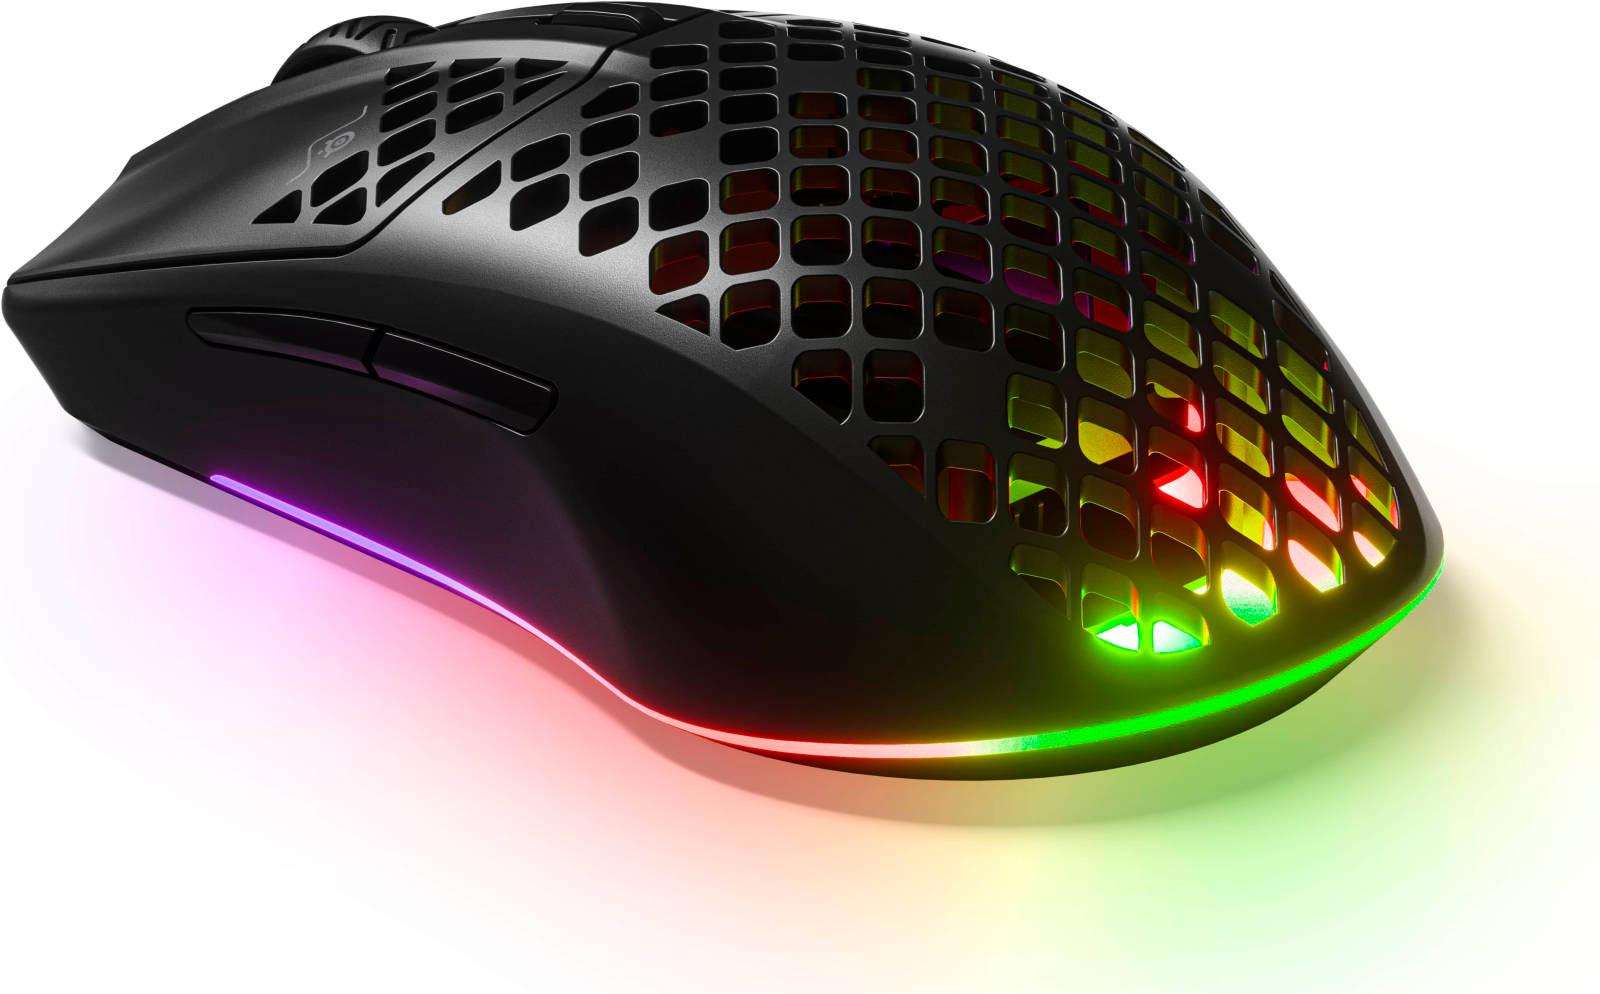 ماوس قيمنق لاسلكية 18000 DPI أسود ستيل سيريز SteelSeries Aerox 3 Wireless Gaming Mouse